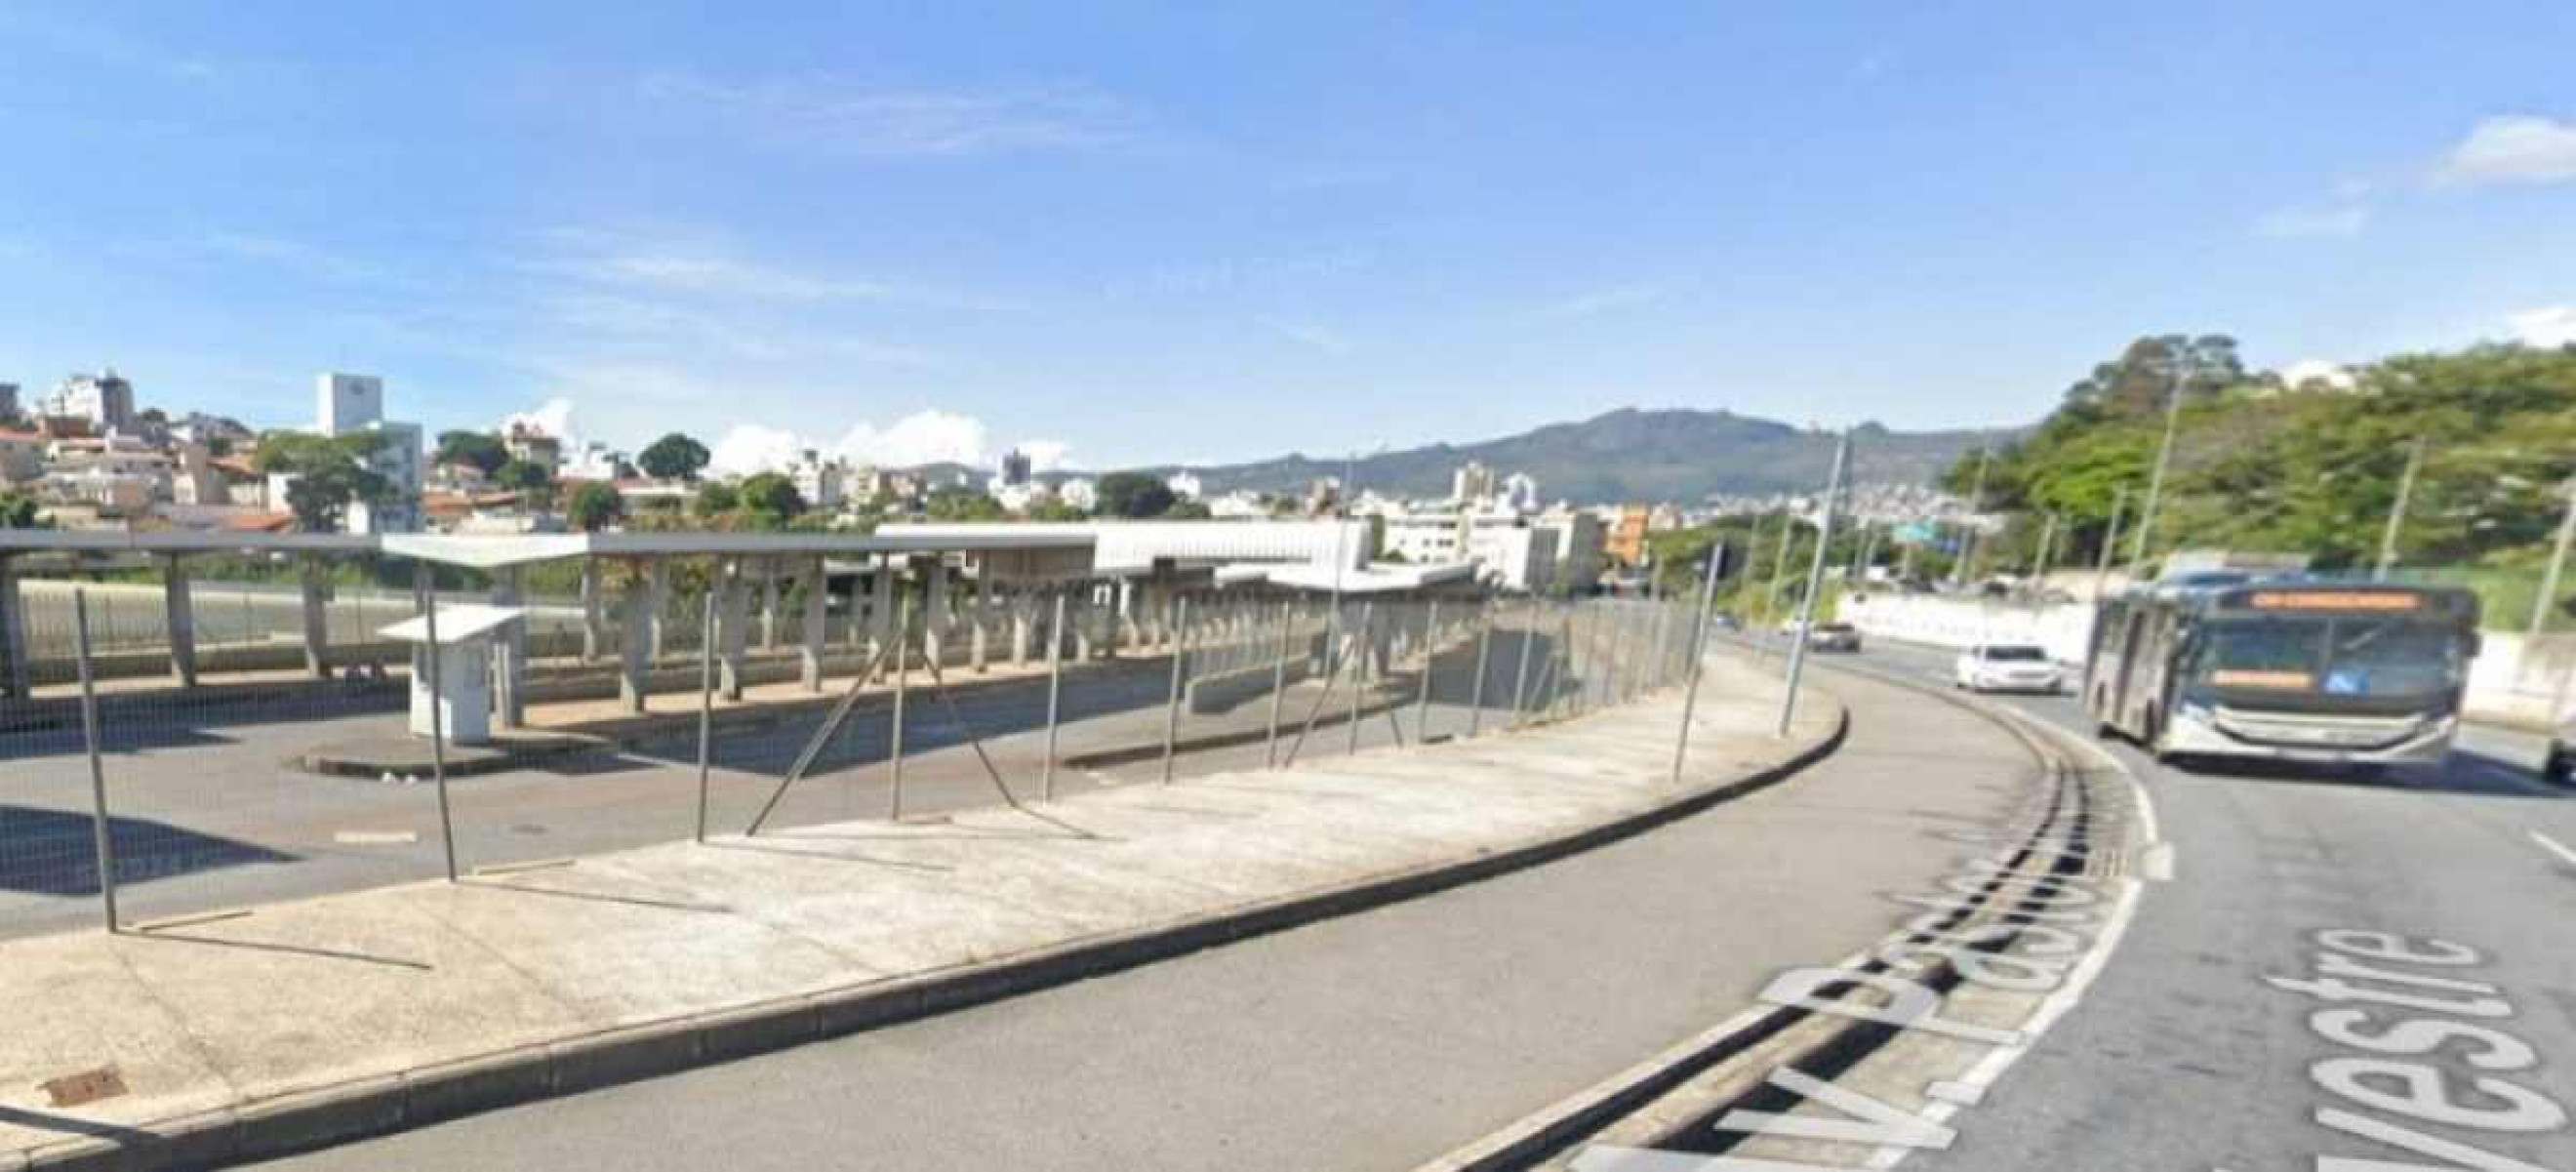 Homem morre após ser atropelado por ônibus em estação no Bairro Santa Inês